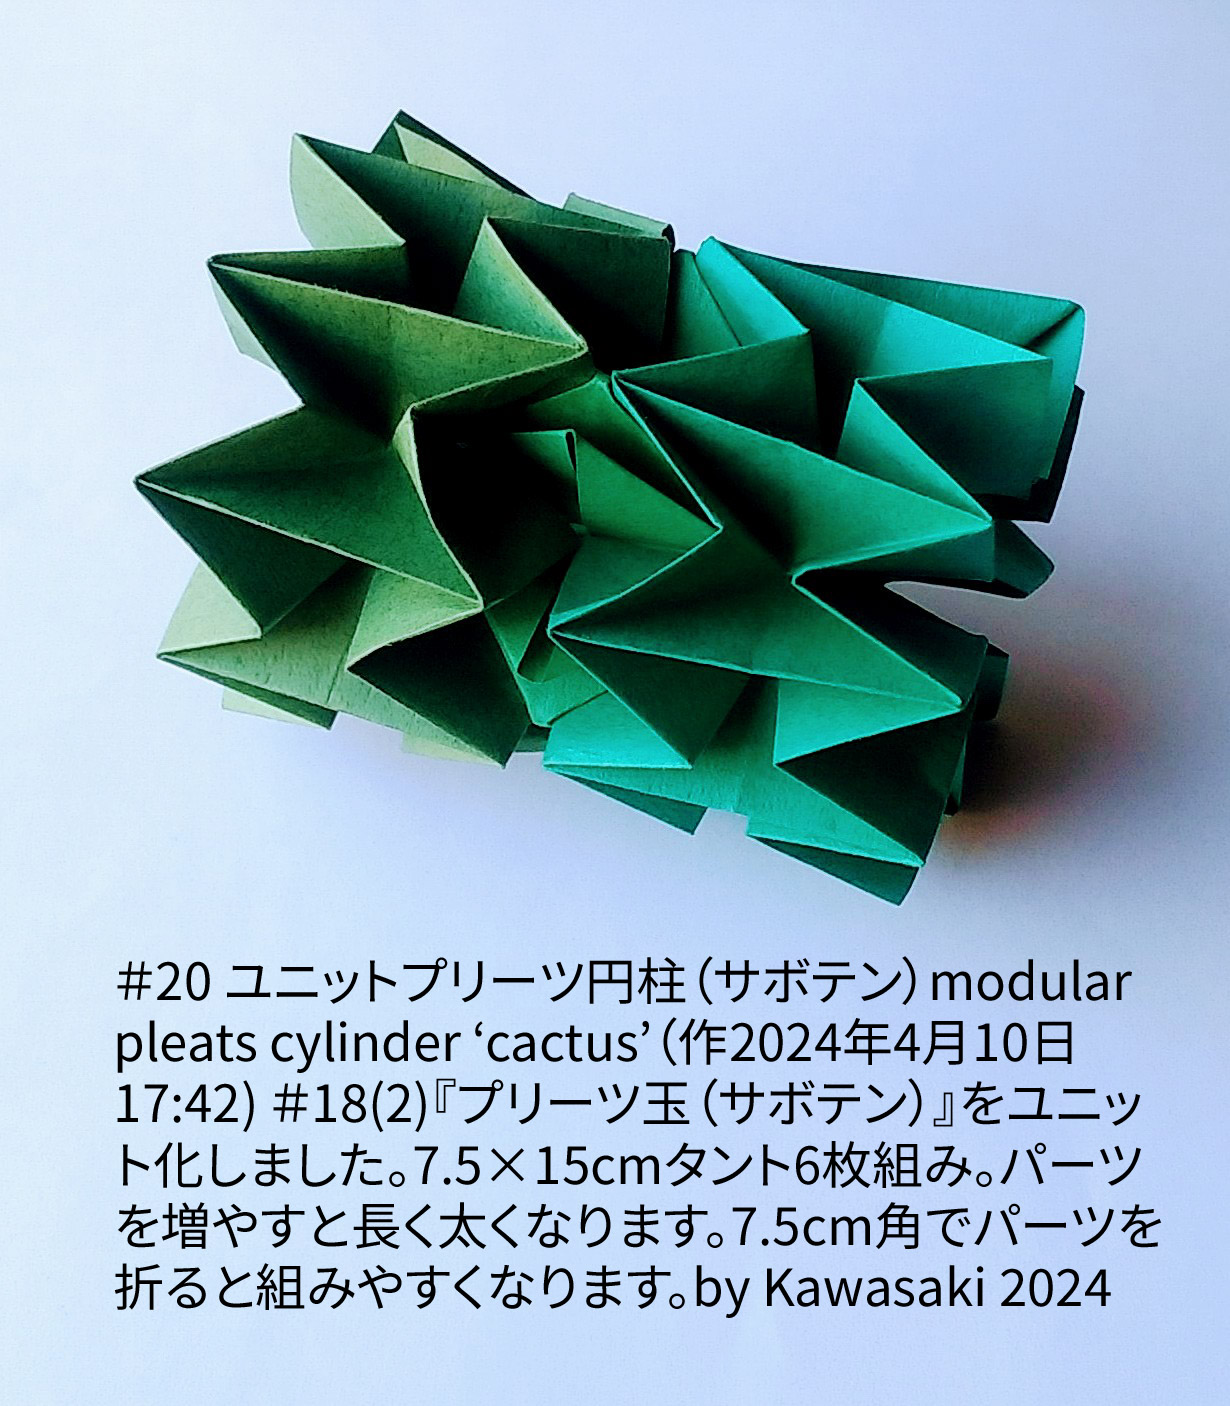 2024/04/10(Wed) 18:16「＃20 ユニットプリーツ円柱（サボテン）modular pleats cylinder ‘cactus’（作2024年4月10日17:42) 」川崎敏和 T.Kawasaki
（創作者 Author：川崎敏和 T.Kawasaki,　製作者 Folder：川崎敏和 T.Kawasaki ,　出典 Source：2024年川崎敏和折り紙キット＃20）
 ＃18(2)『プリーツ玉（サボテン）』をユニット化しました。7.5×15cmタント6枚組み。パーツを増やすと長く太くなります。7.5cm角でパーツを折ると組みやすくなります。by Kawasaki 2024